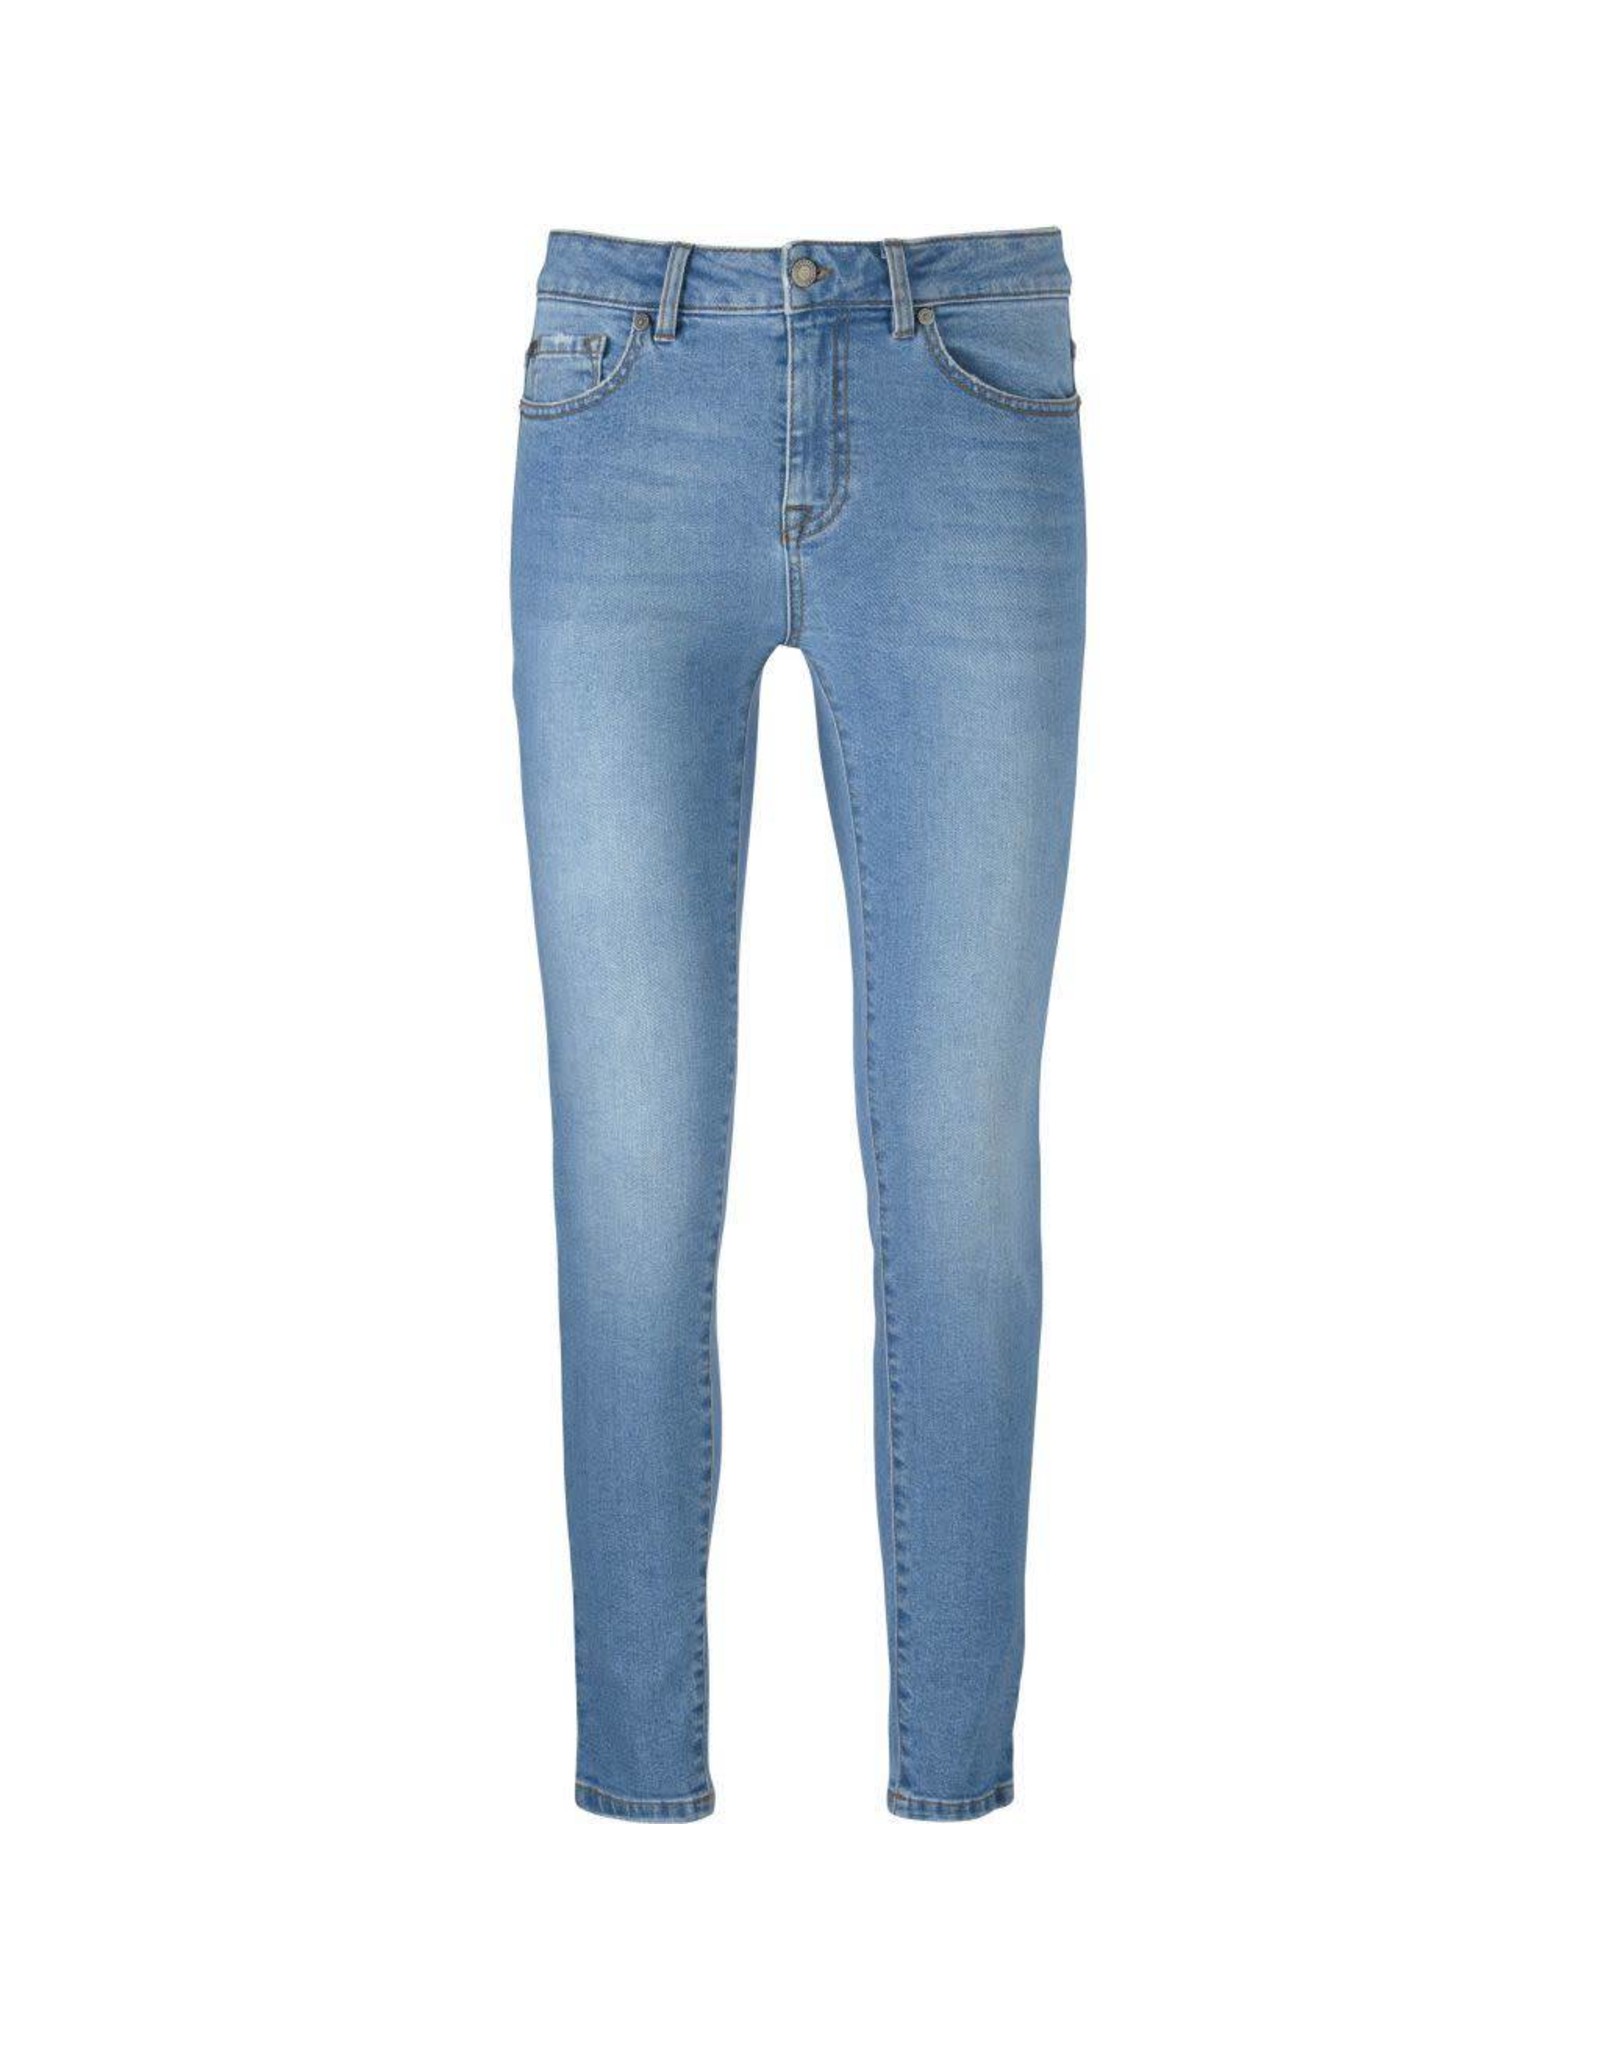 Ivy Daria jeans